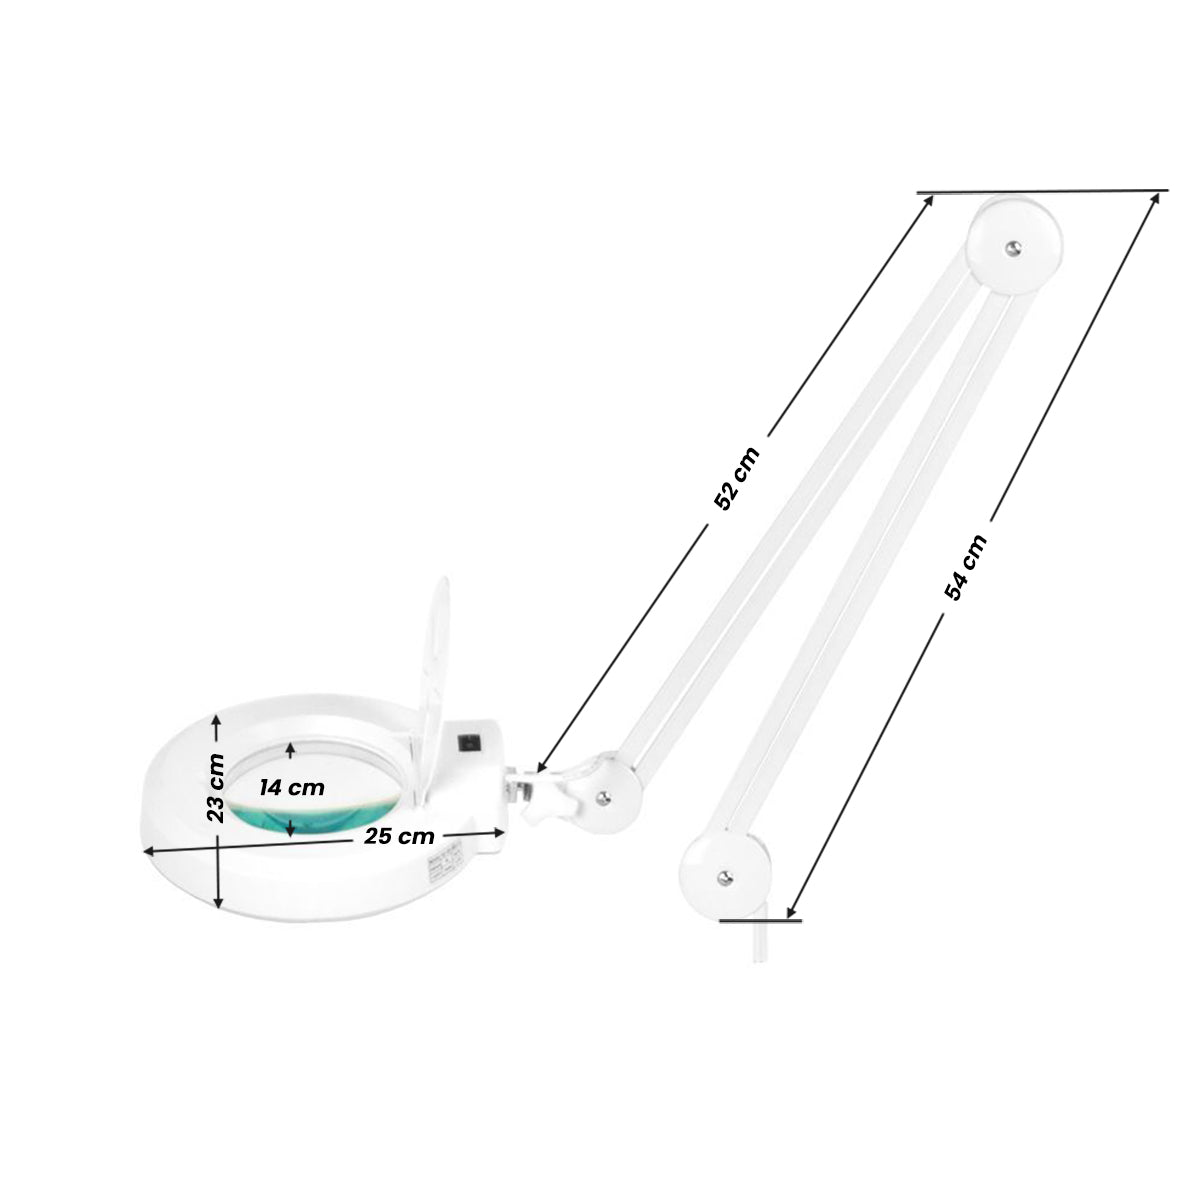 ACTIVESHOP S4 LED magnifier lamp + tripod